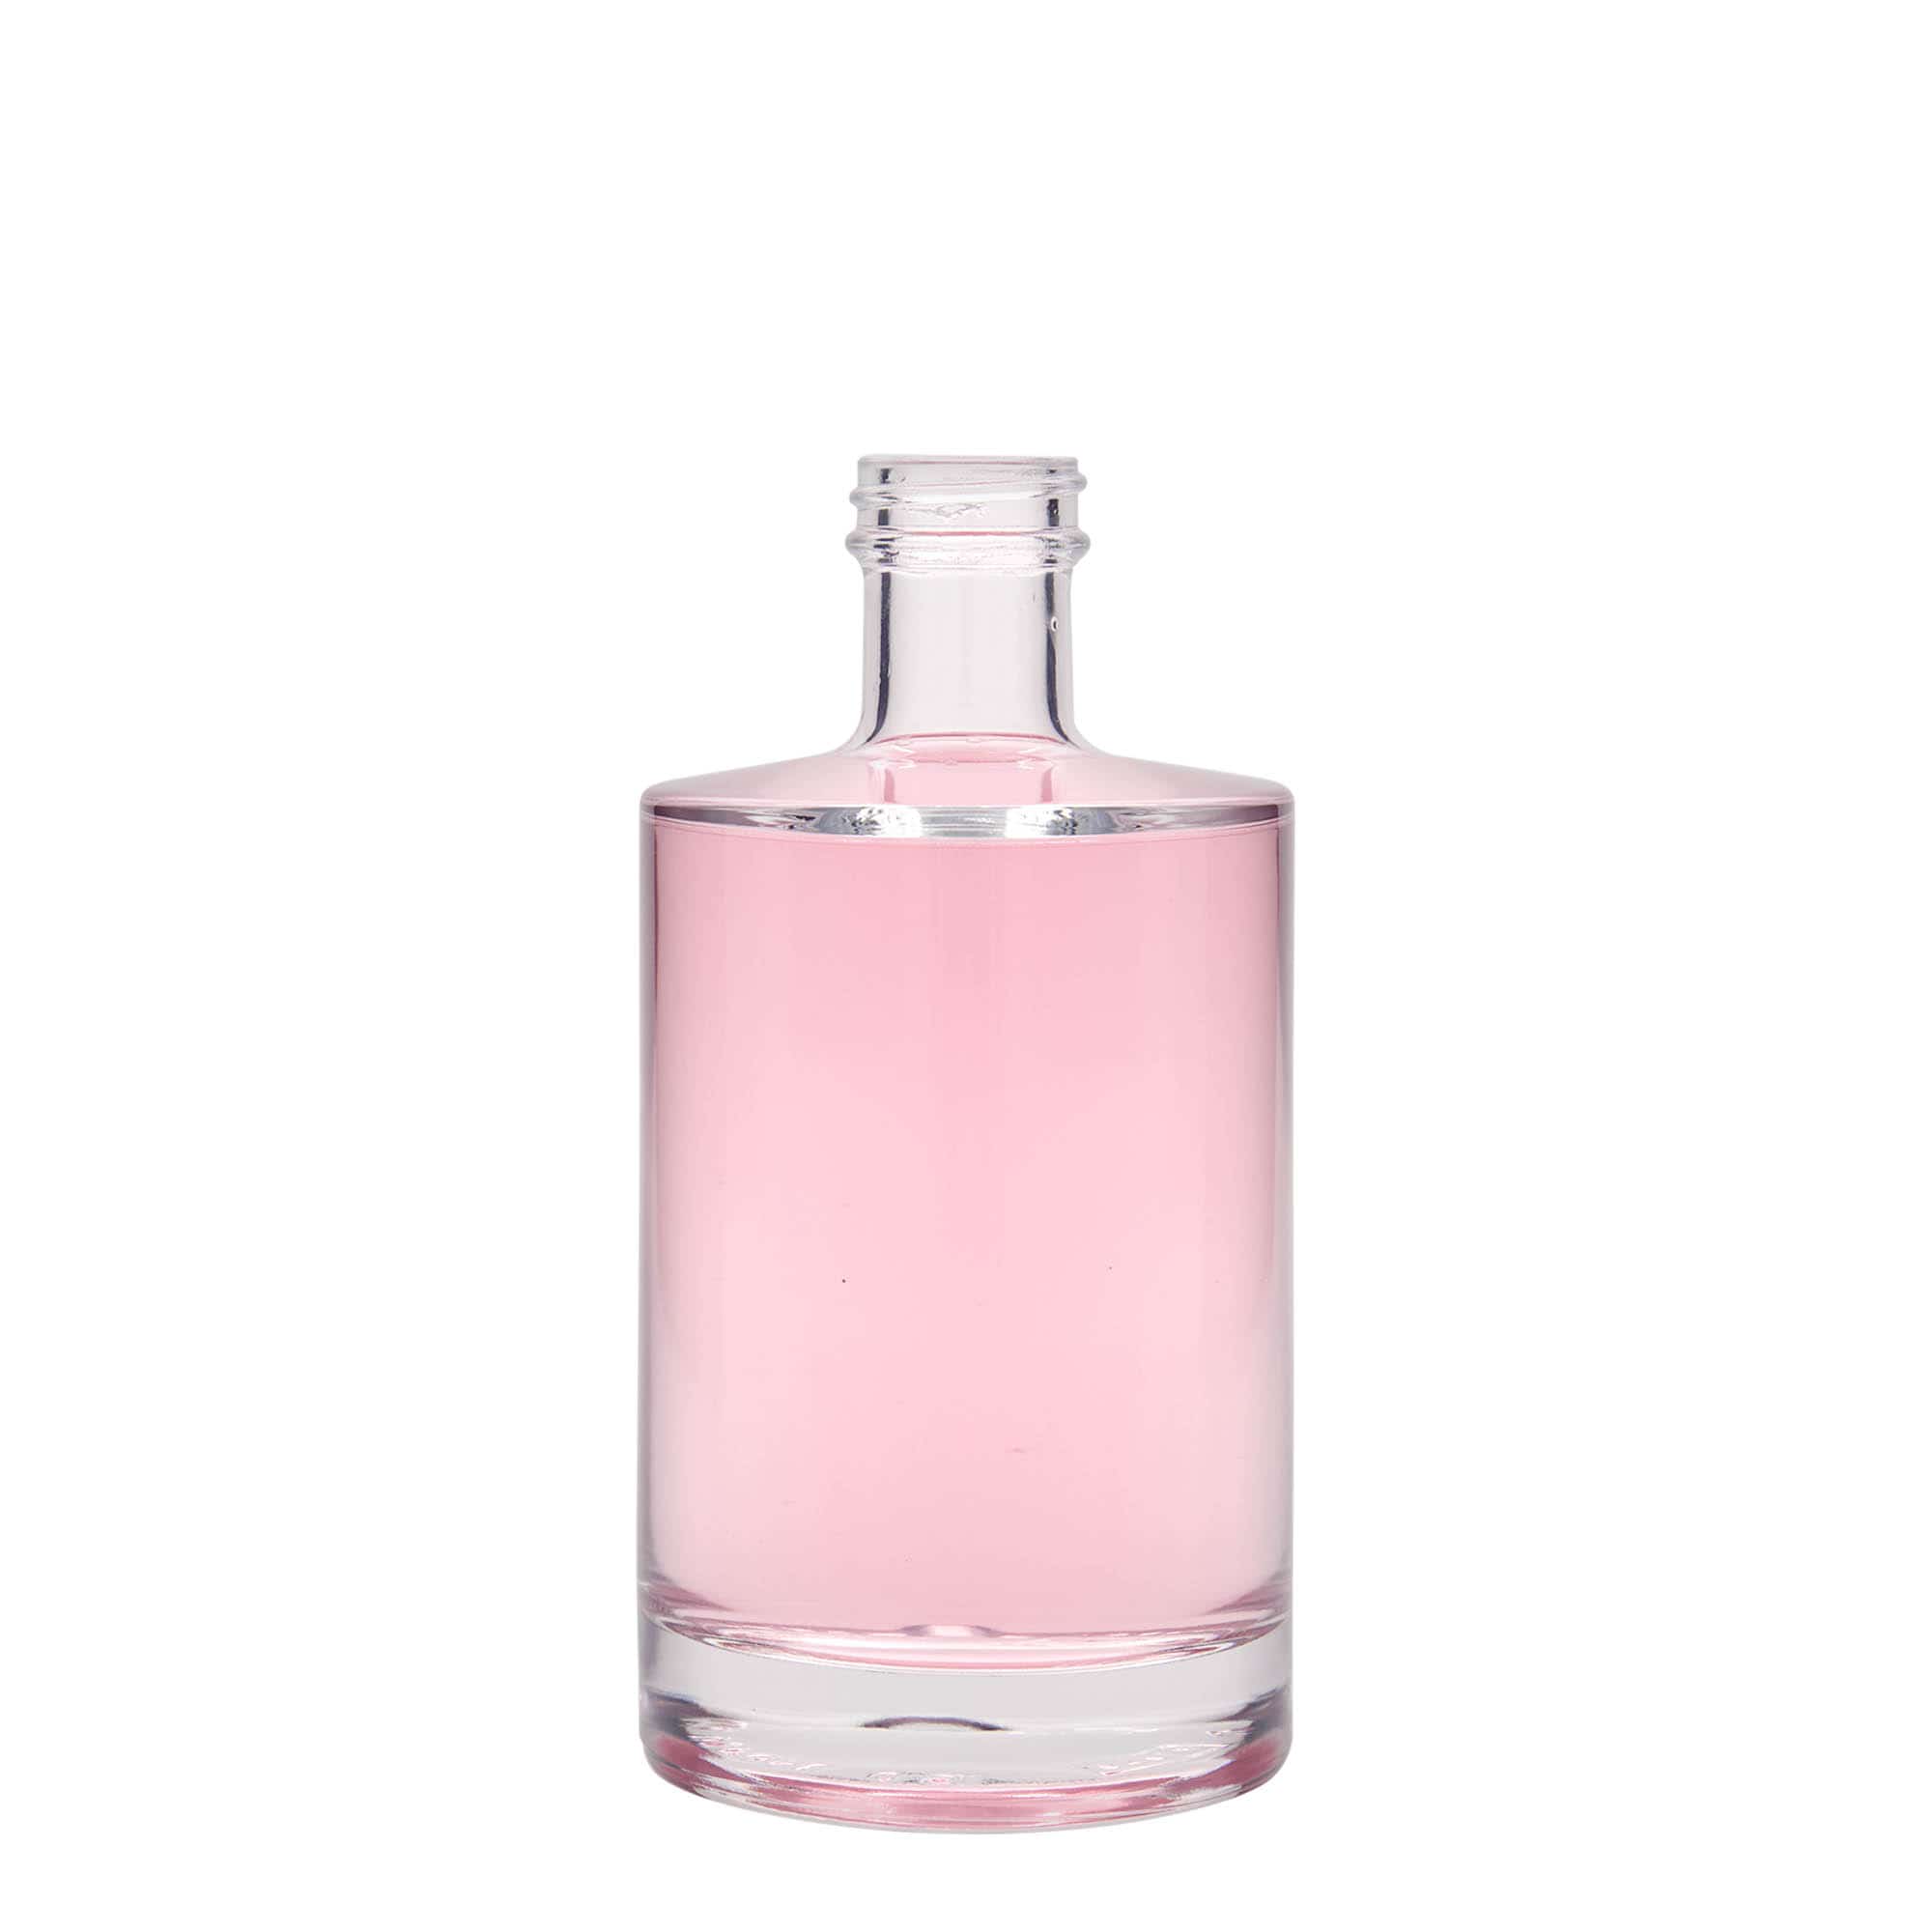 Skleněná lahev 500 ml 'Aventura', uzávěr: GPI 33